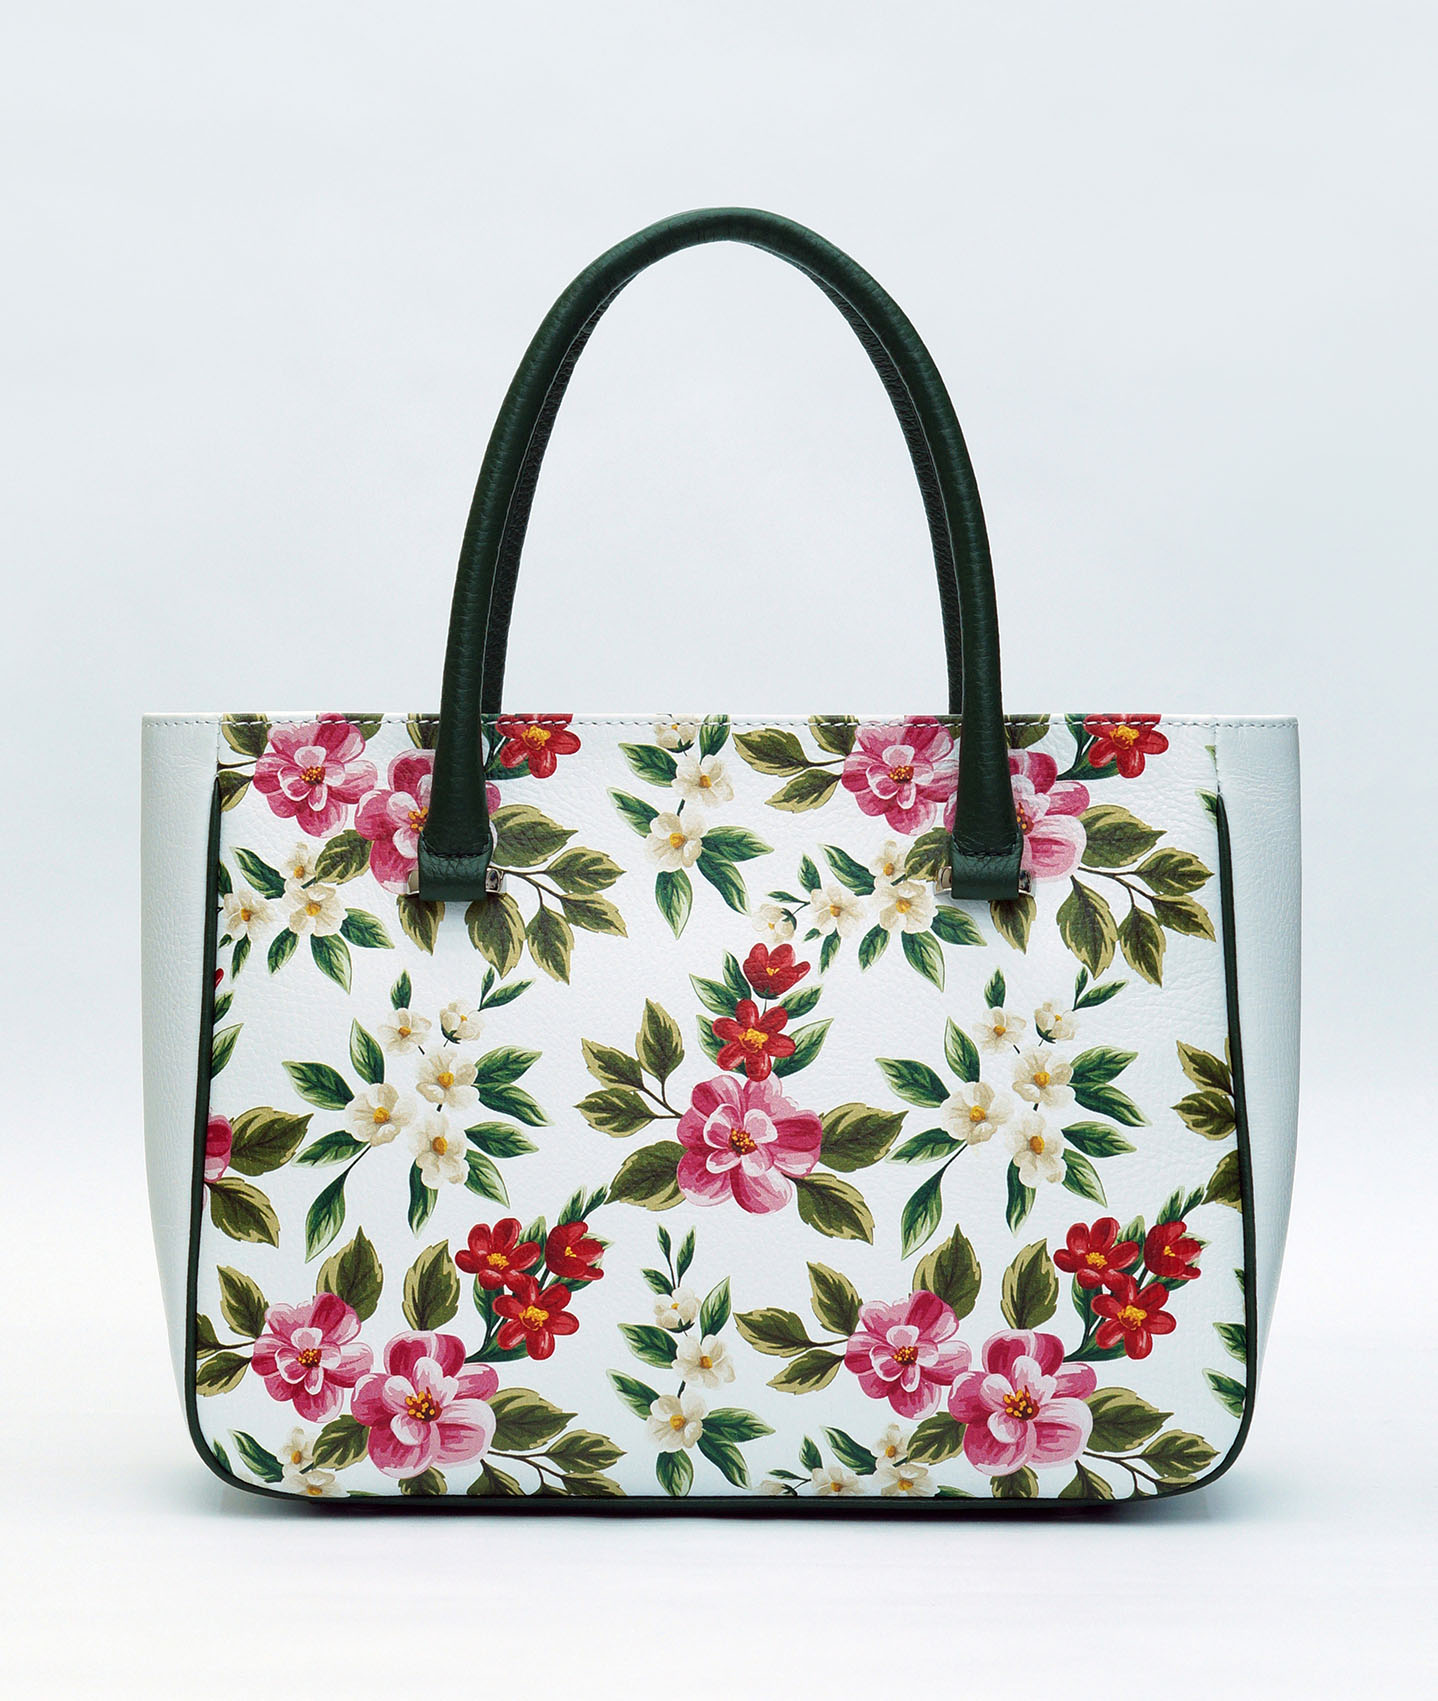 Сайт производителей сумок. Летние цветные сумки. Женская сумка летняя. Сумка в цветочек. Сумка с цветочным принтом.